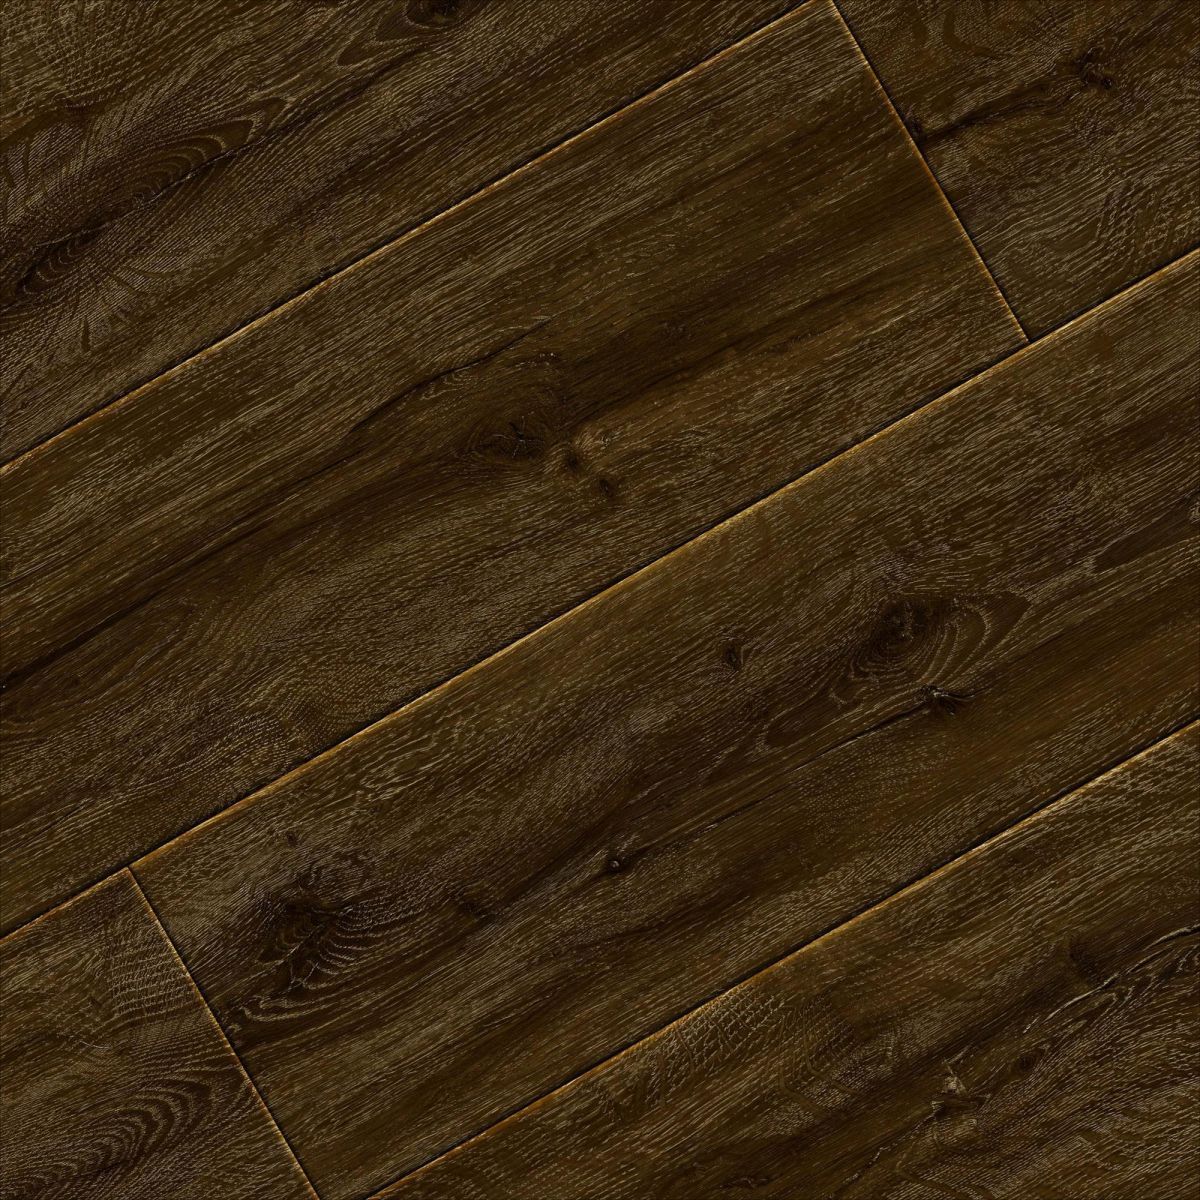 Antique Wood Texture 5 mm 0.4 Wear Layer Lvp Flooring Vinyl Plank Click  Lock - China Lvt Floor, Bathroom Lvt Flooring